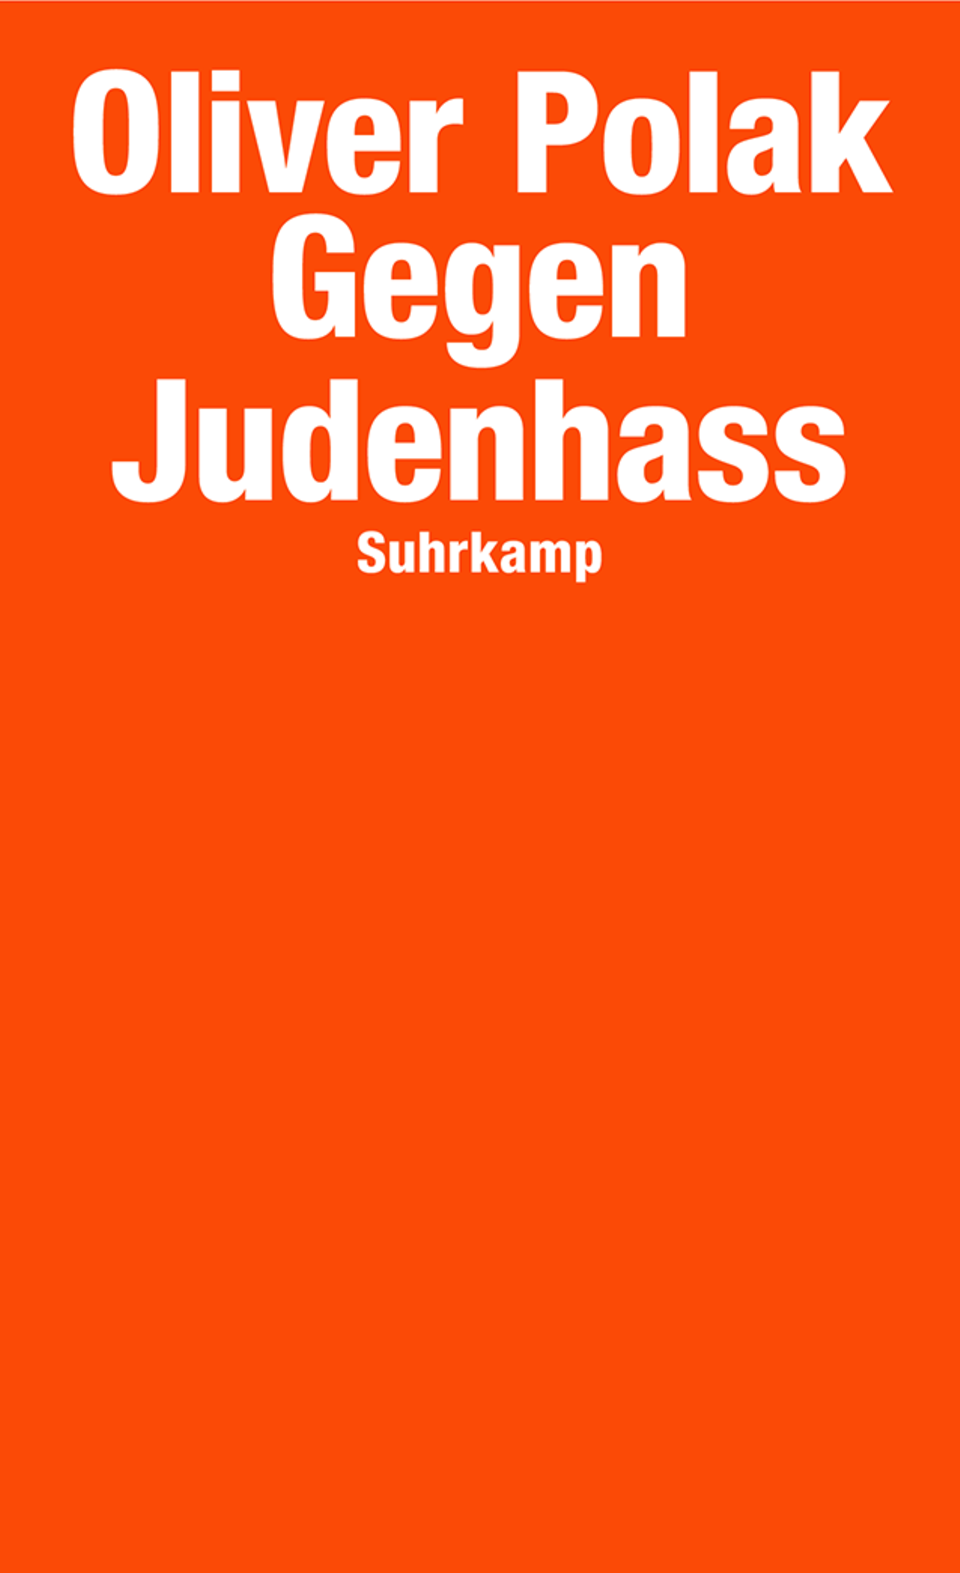 Buchcover: "Gegen Judenhass" (Suhrkamp) von Oliver Polak